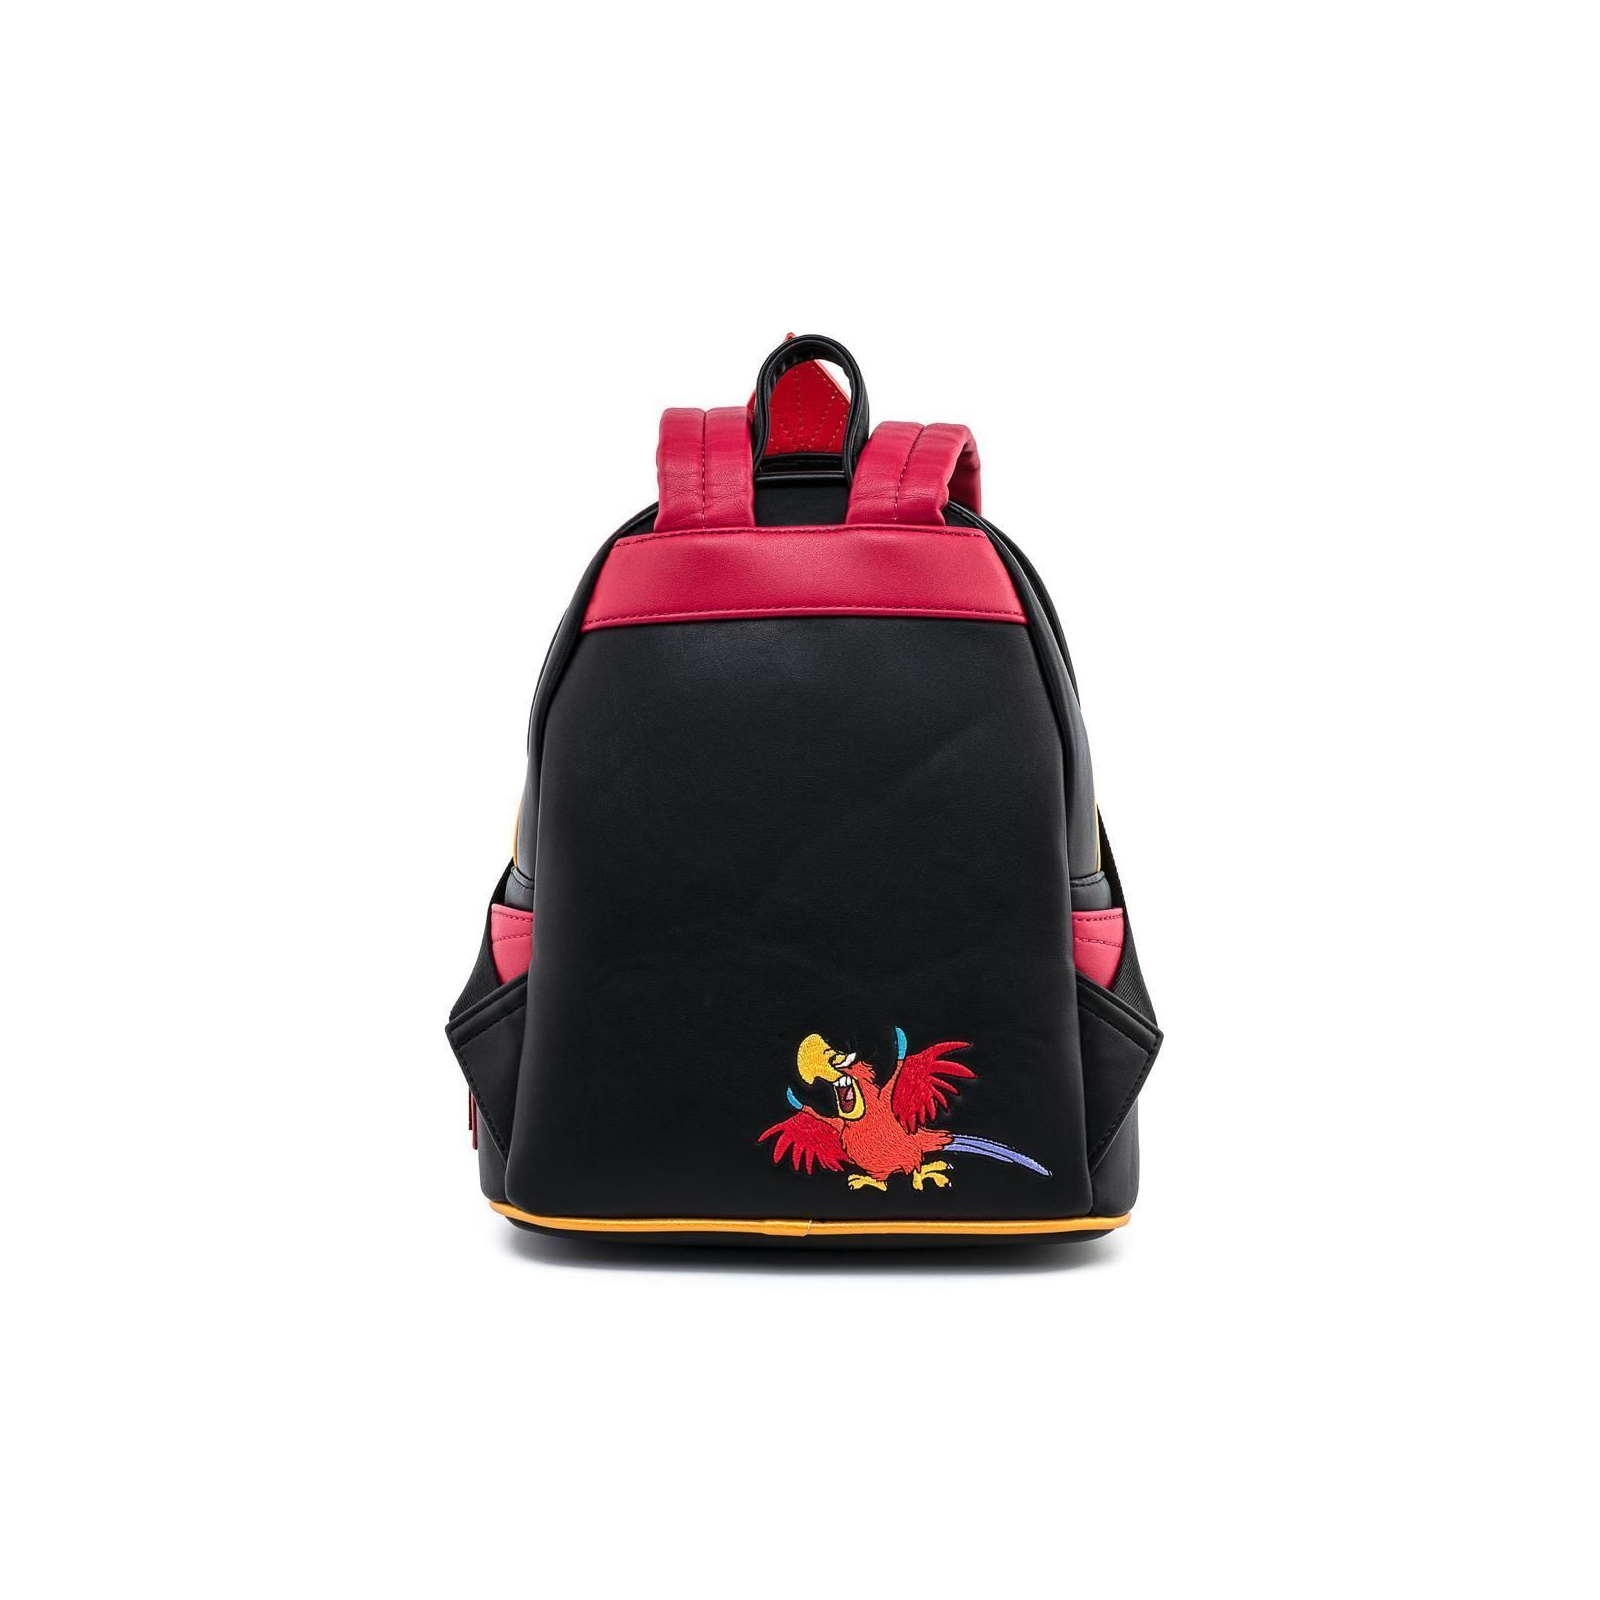 Рюкзак шкільний Loungefly Disney - Aladdin Jafar Cosplay Mini Backpack (WDBK1149) зображення 4